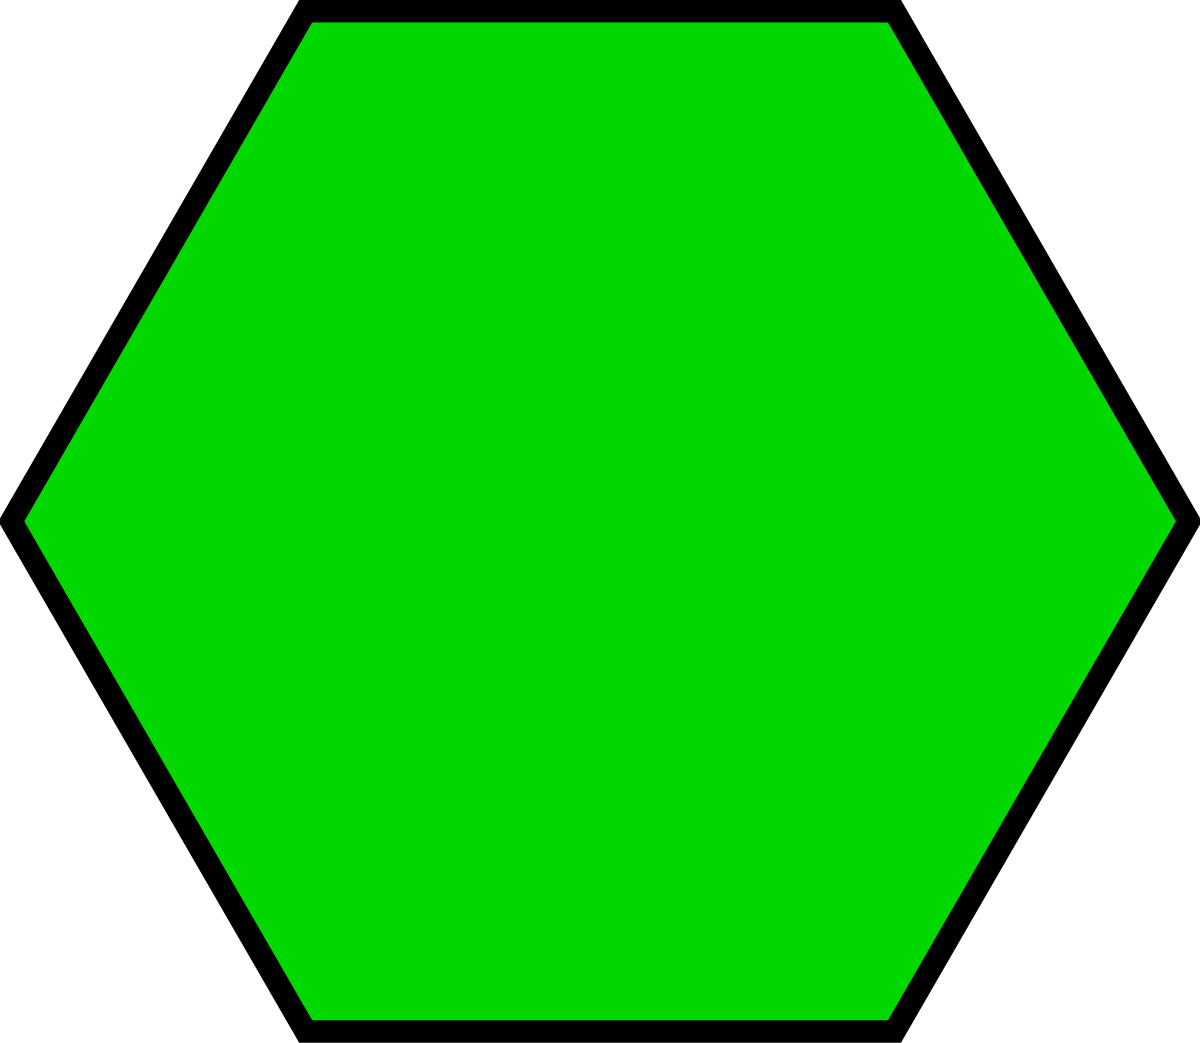 Картинки многоугольников. Пятиугольник и семиугольник. Шестиугольник, семиугольник,восьмиугольник. Многоугольники для детей. Трапеция Геометрическая фигура.